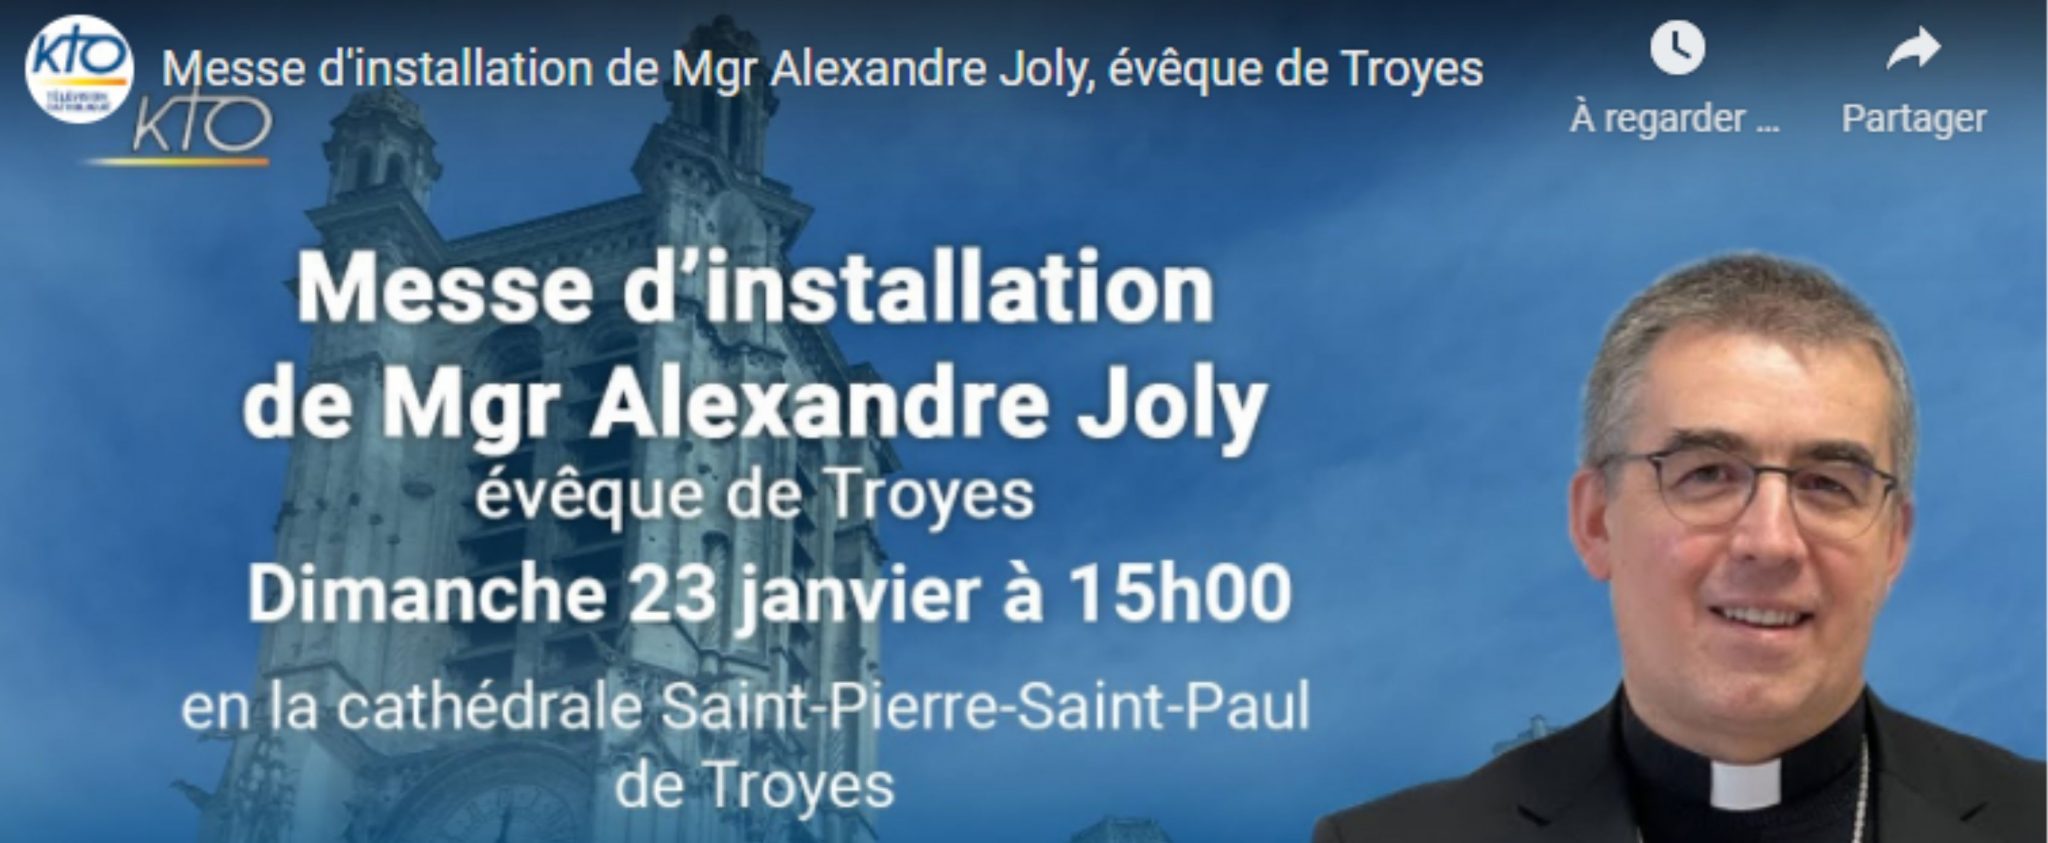 Messe d'installation de Mgr Alexandre Joly en direct sur Youtube KTO - Diocèse de Rouen